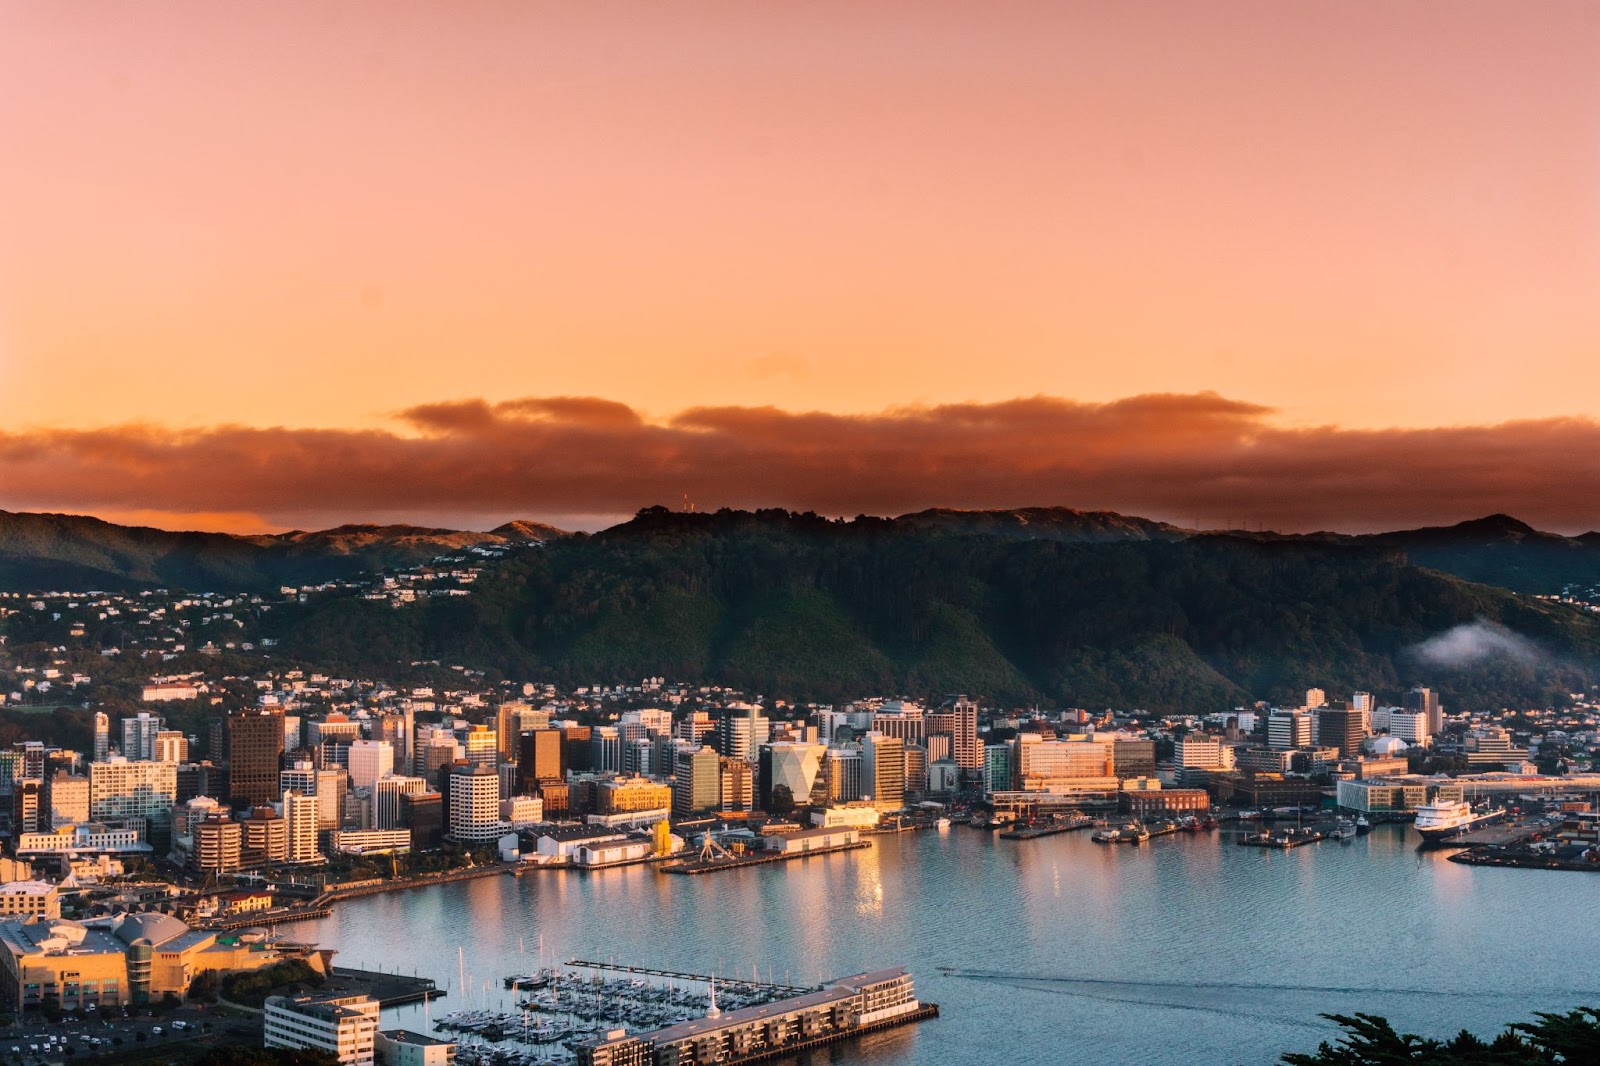 Capital of New Zealand - Wellington